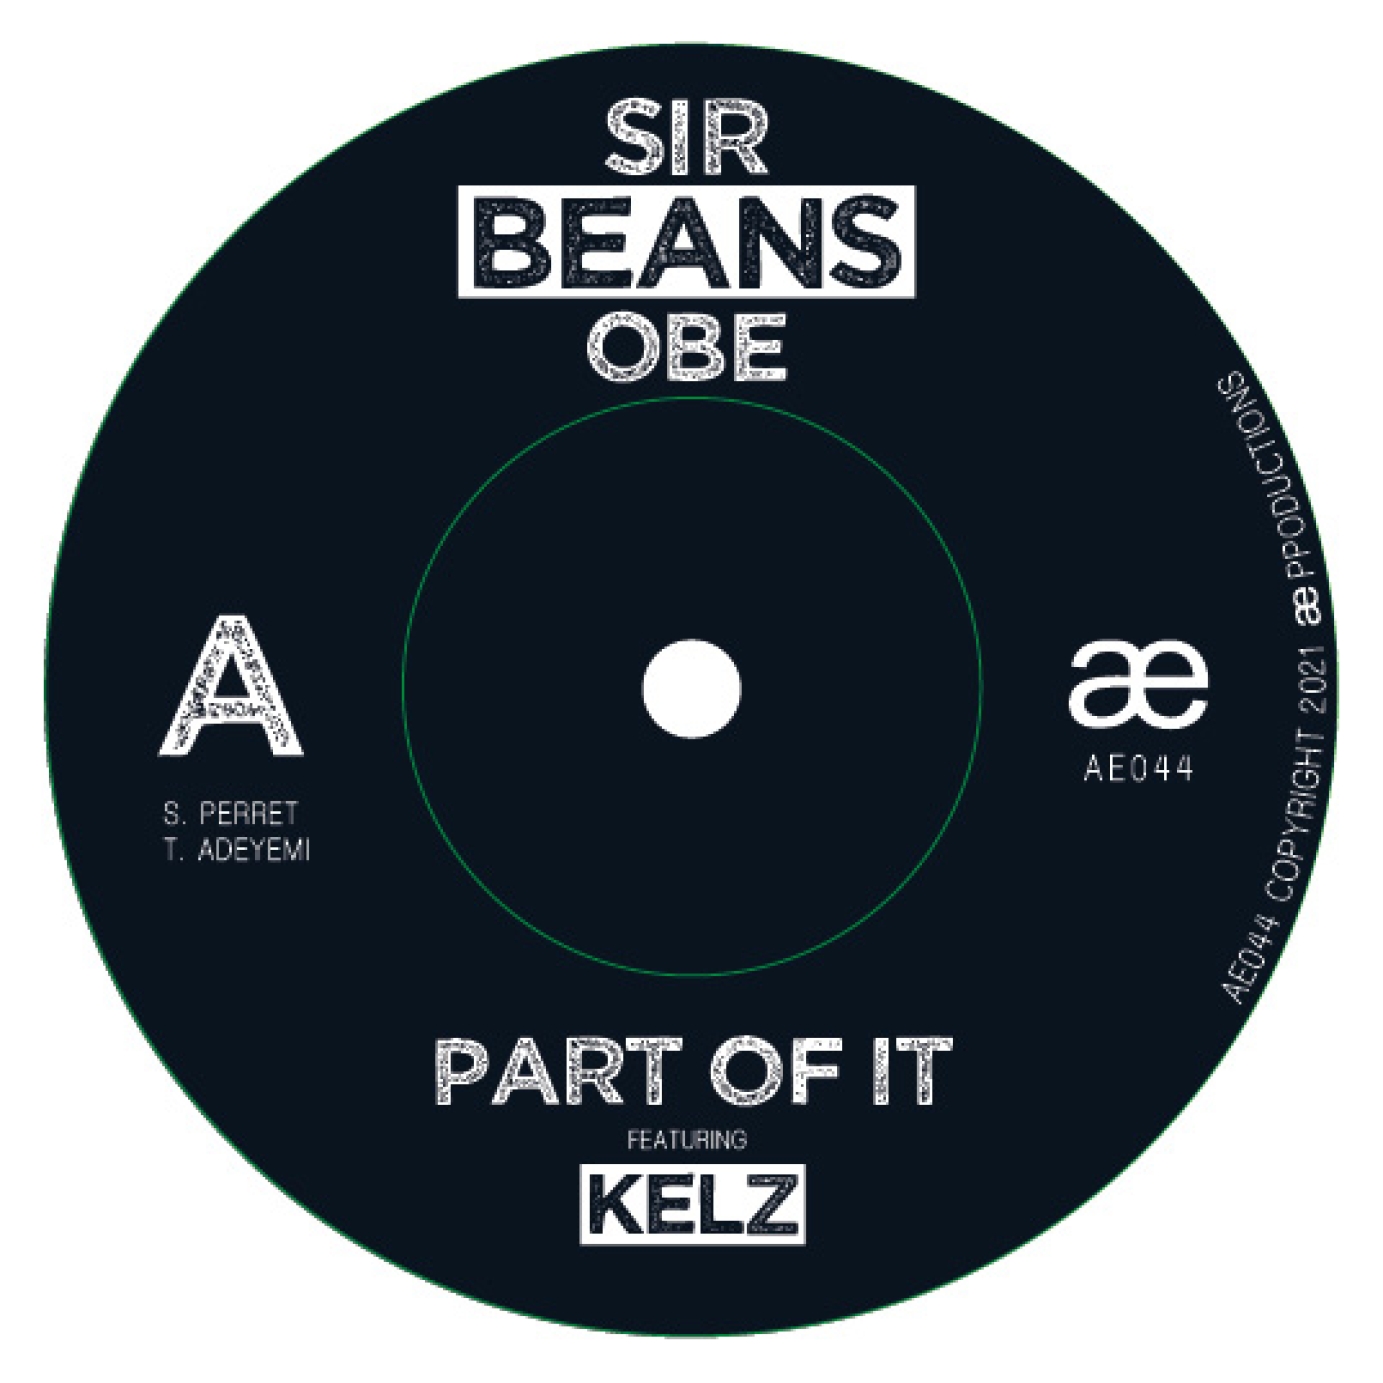 Sir Beans OBE 7" artwork